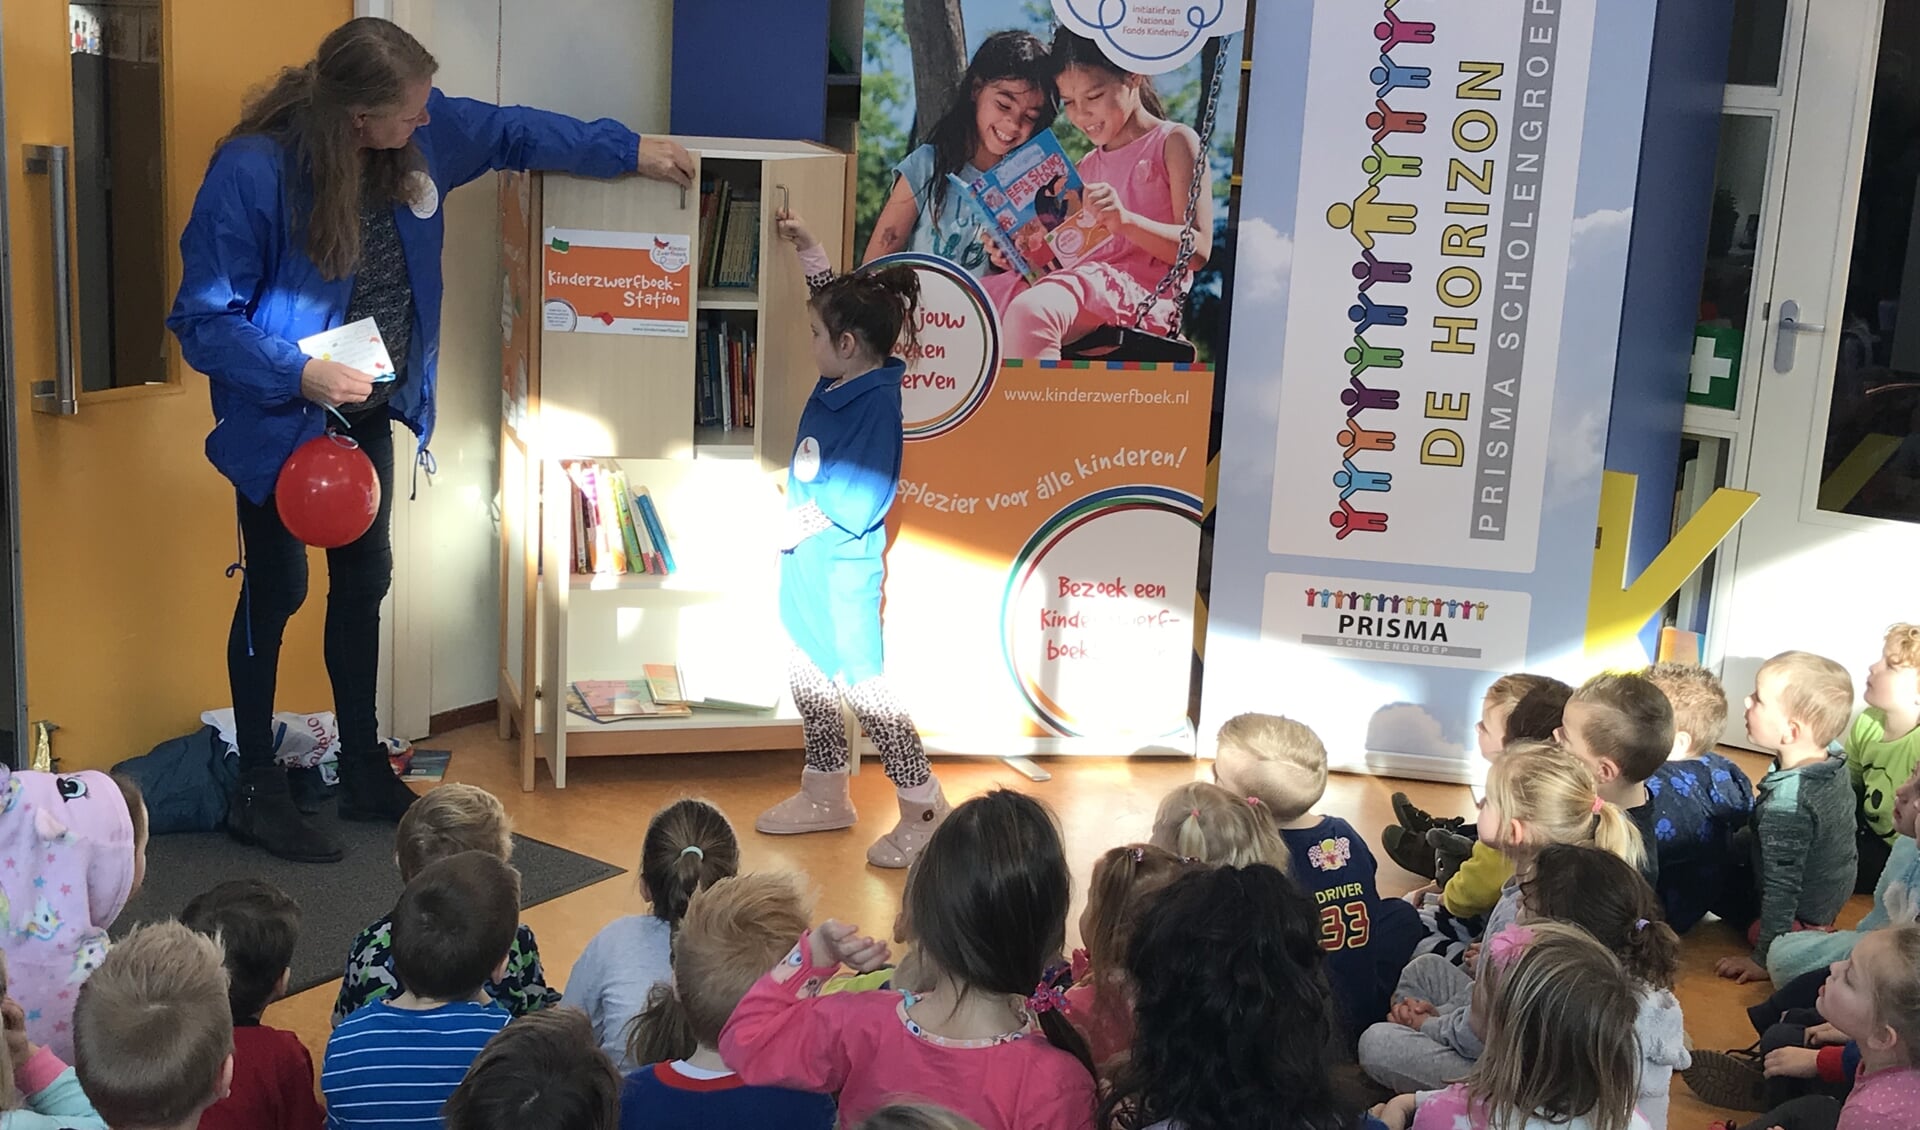 De jarige Ruhmen mag helpen met de opening van het kinderzwerfboekenstation.